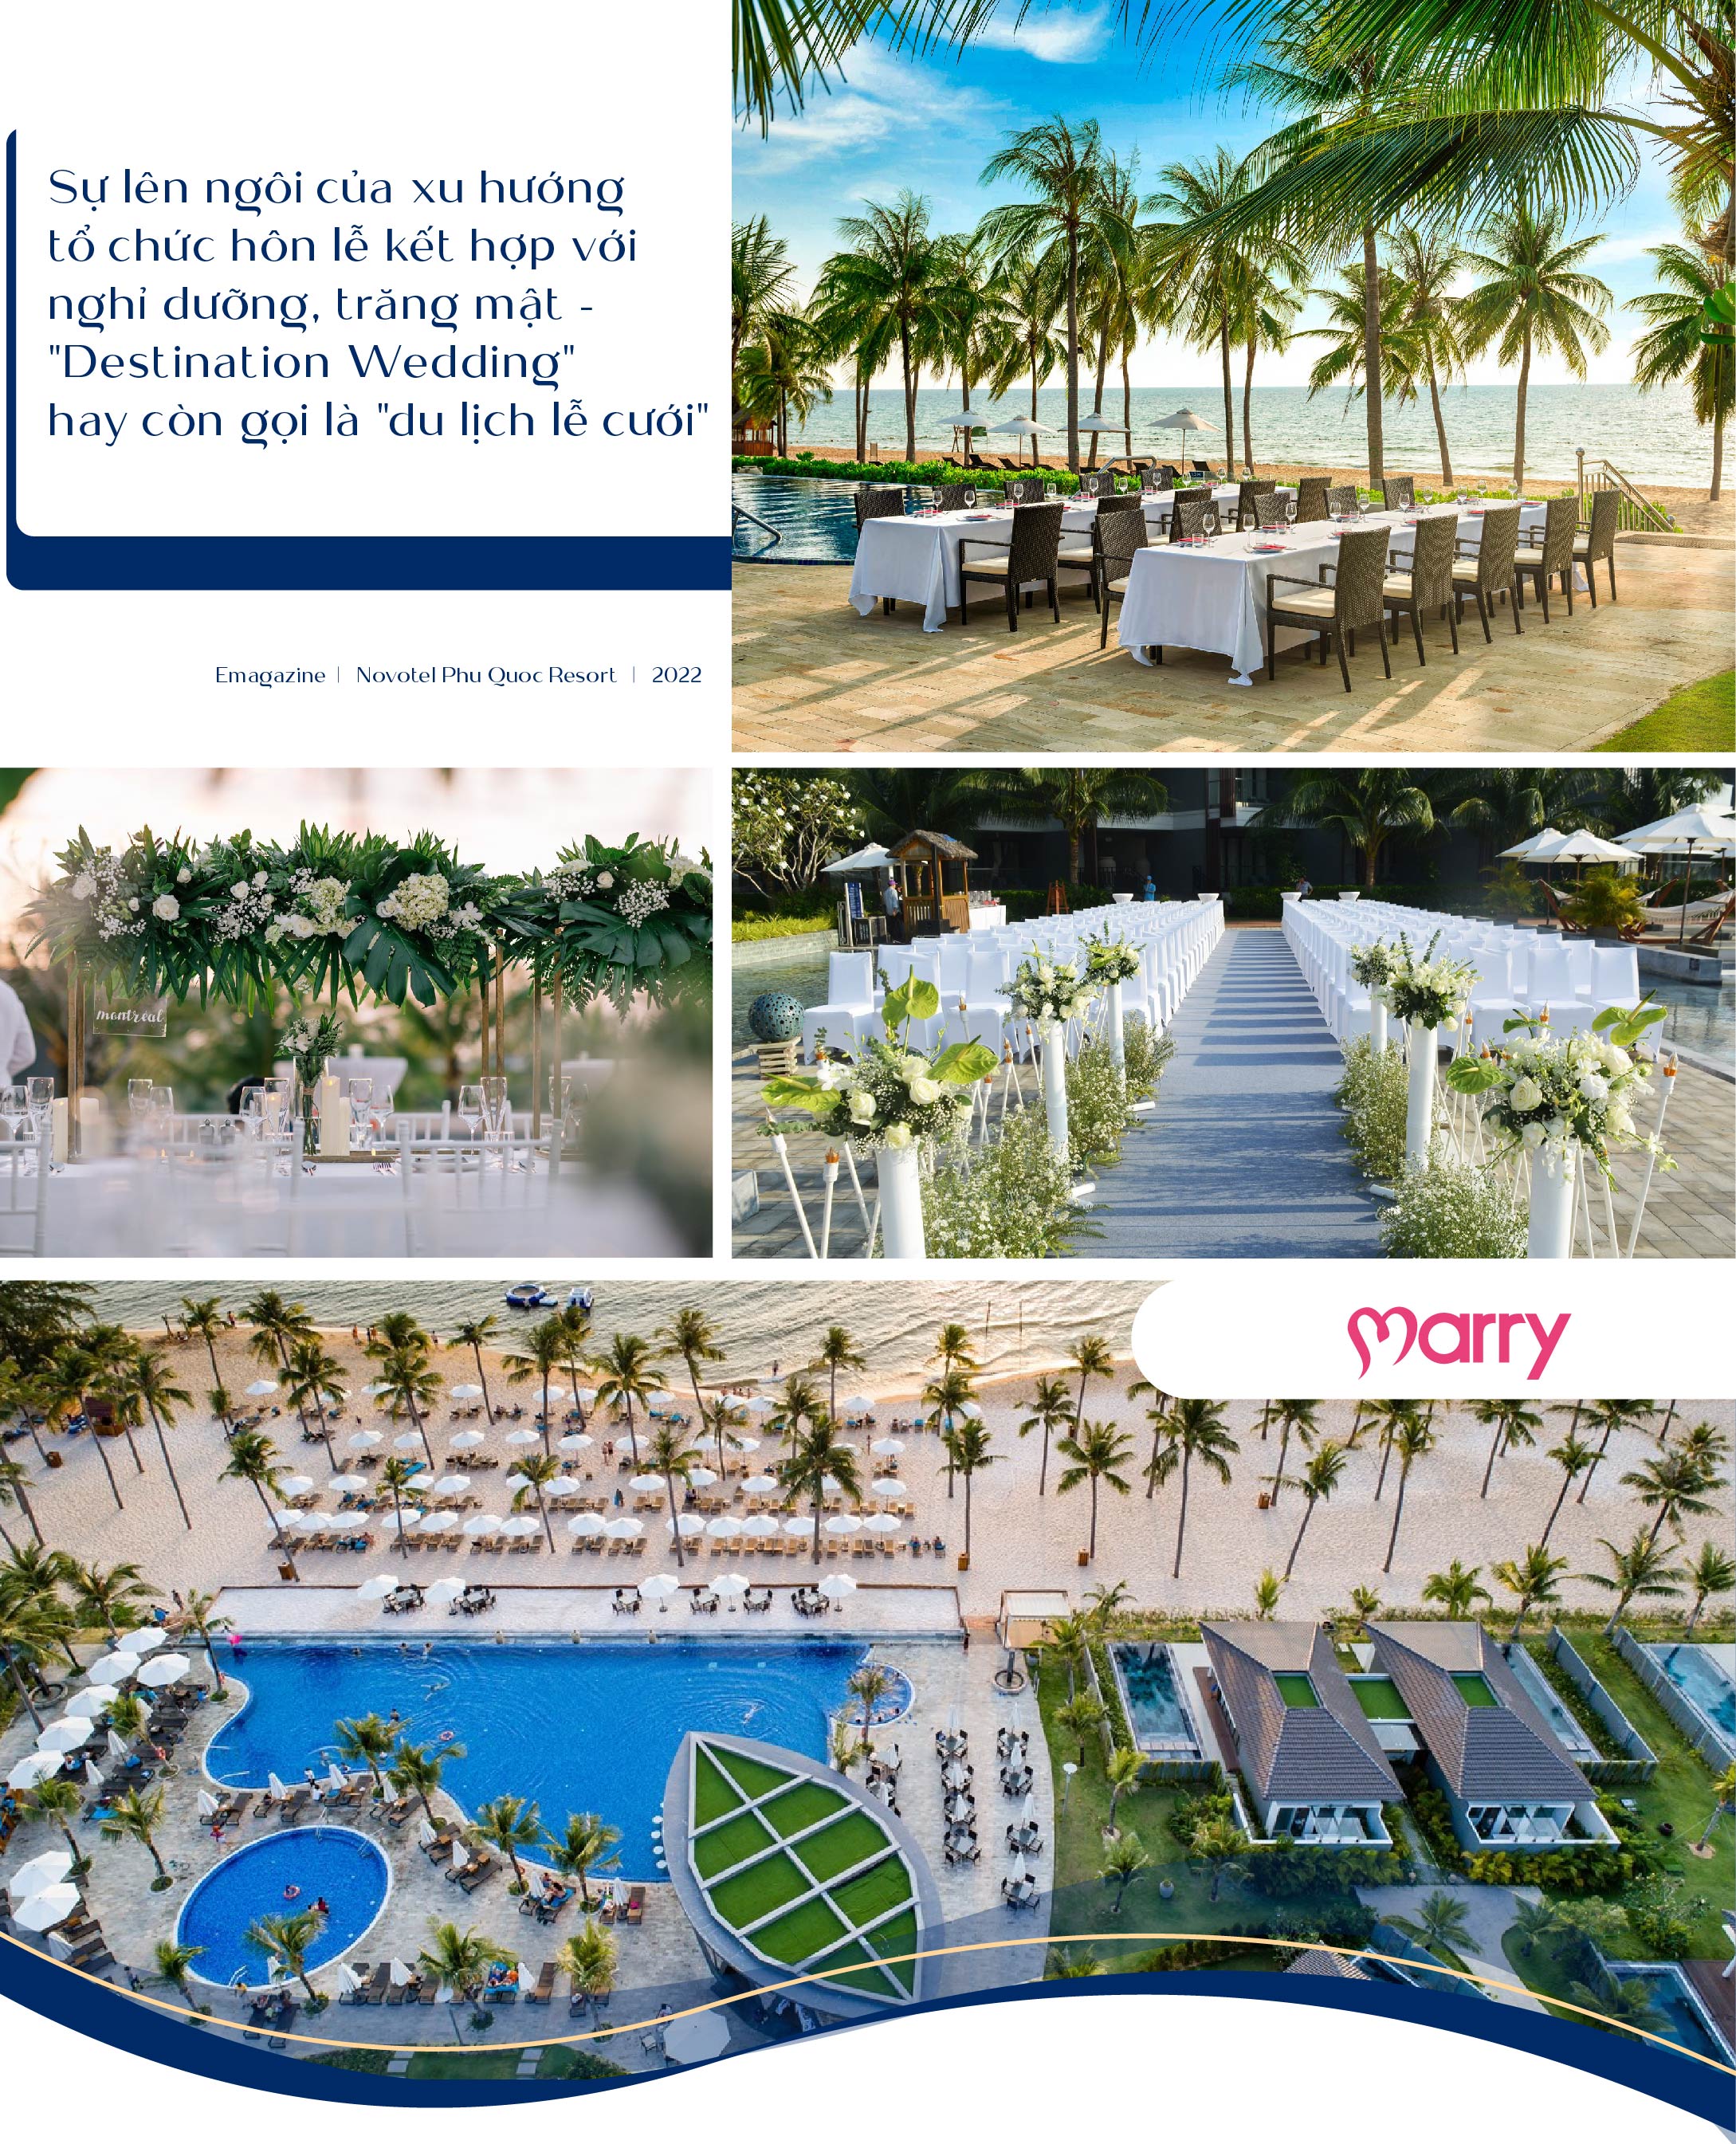 Novotel Phu Quoc Resort - Điểm hẹn hàng đầu cho lễ cưới kết hợp nghỉ dưỡng